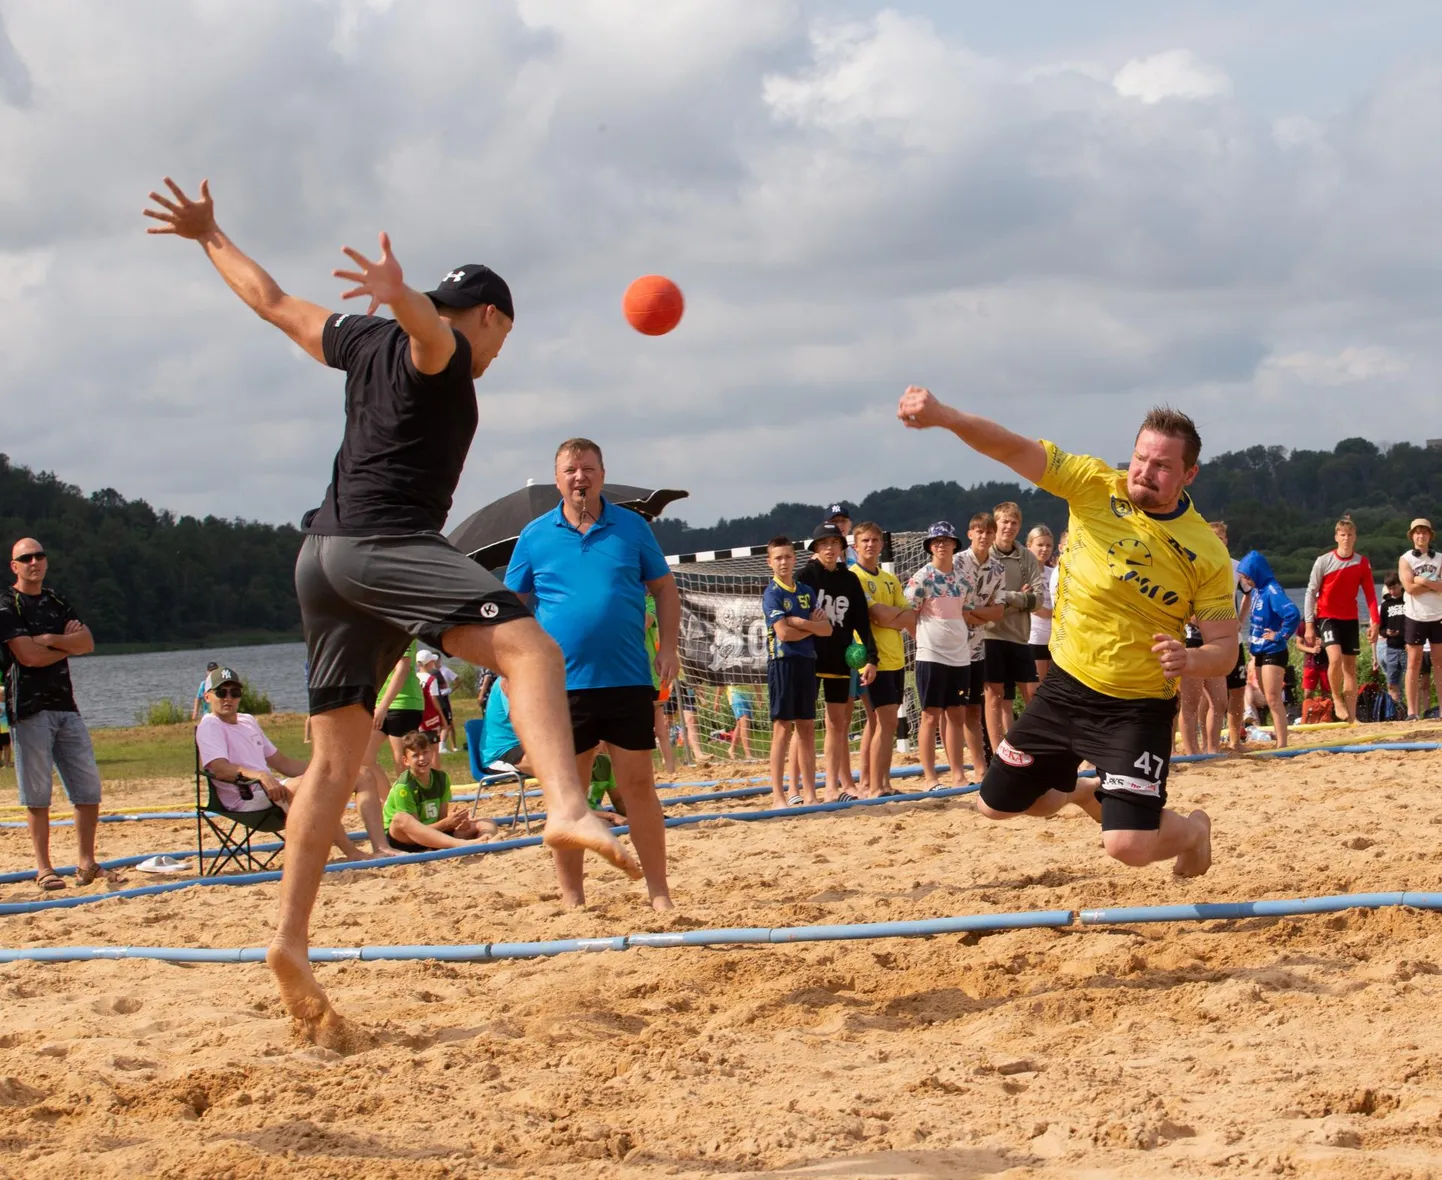 Laupäeval selguvad Viljandi järve ääres Eesti rannakäsipalli meistrid.